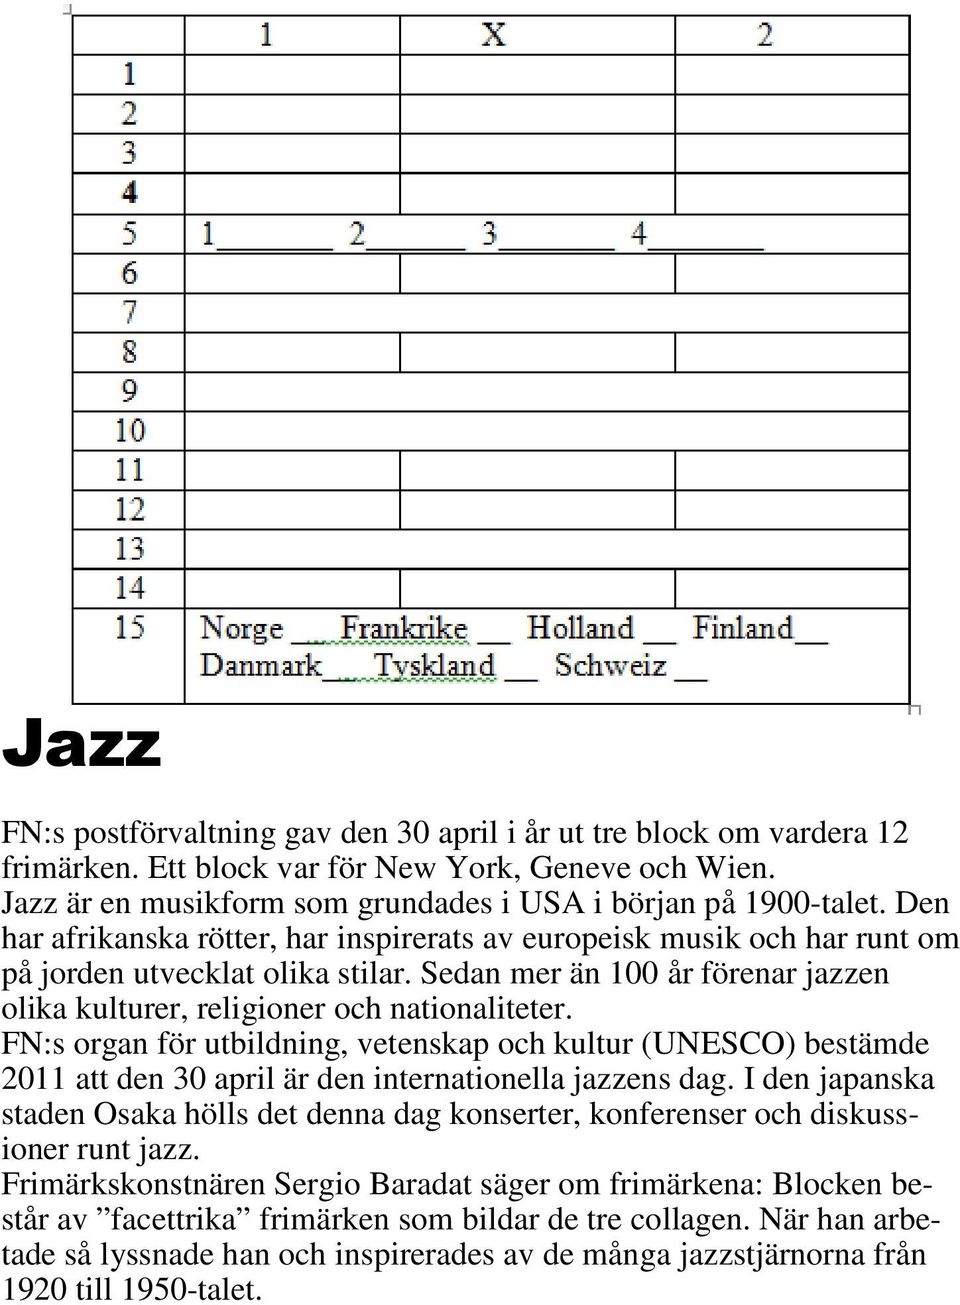 FN:s organ för utbildning, vetenskap och kultur (UNESCO) bestämde 2011 att den 30 april är den internationella jazzens dag.